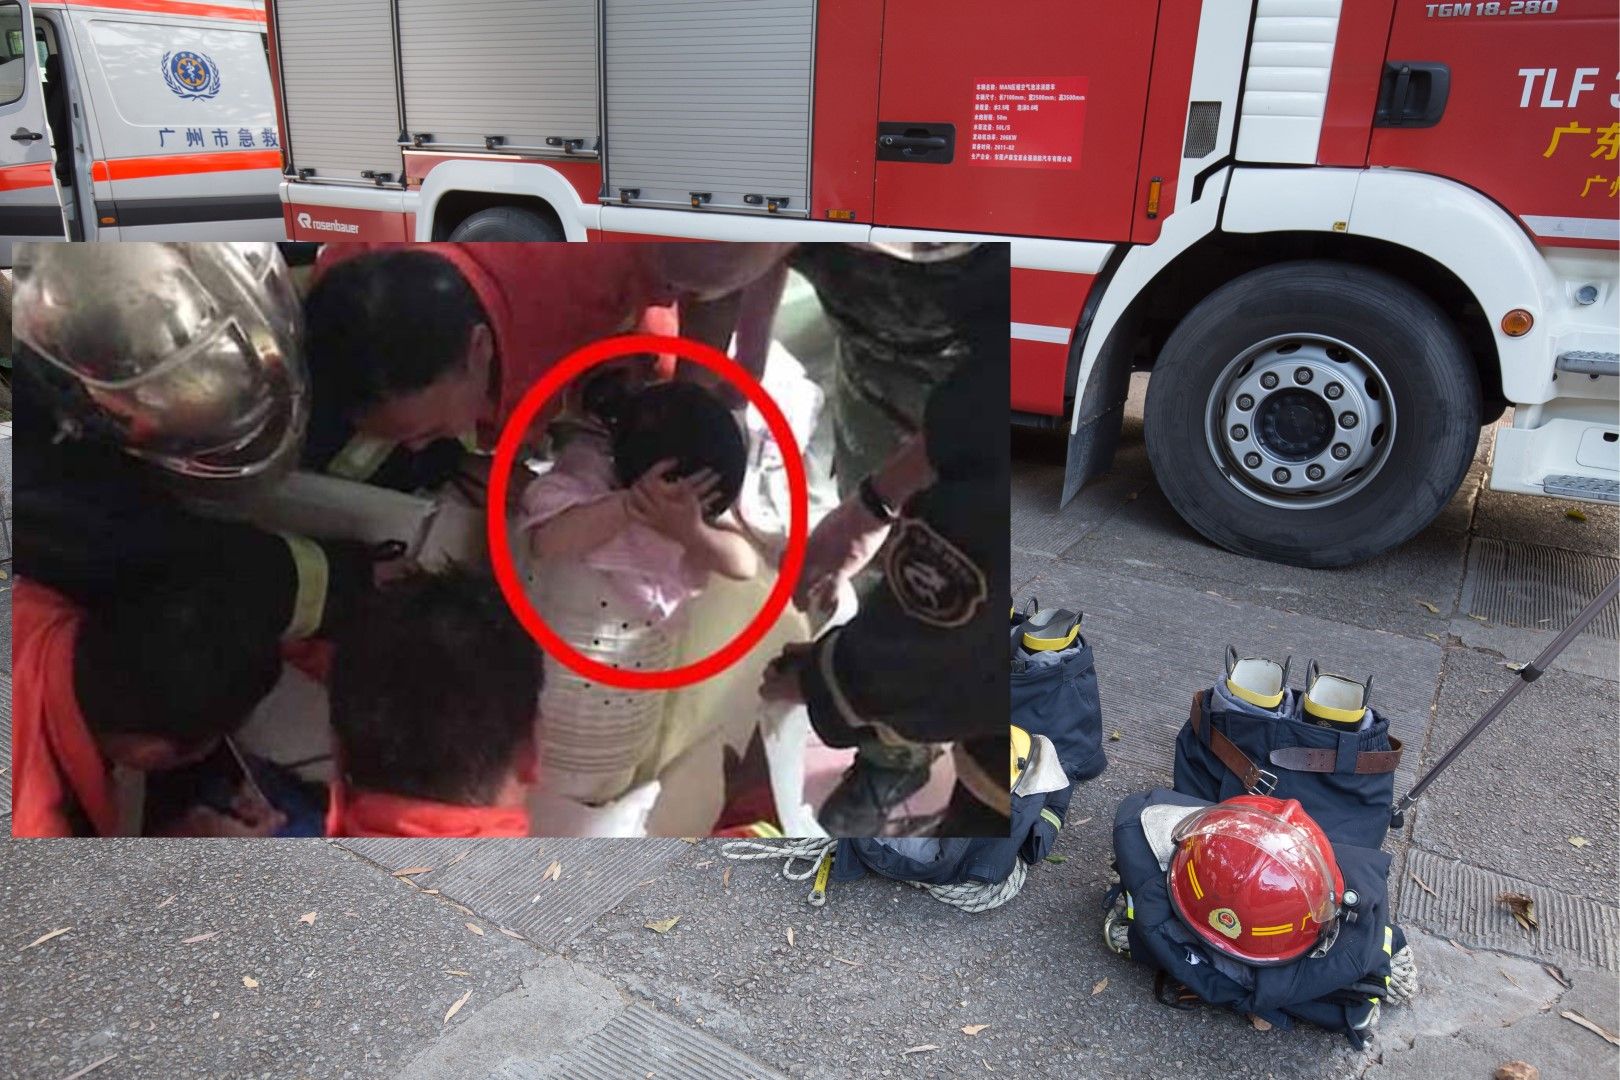 Близо половин час пожарникарите разглобявали пералнята и рязали металния барабан, за да извадят детето